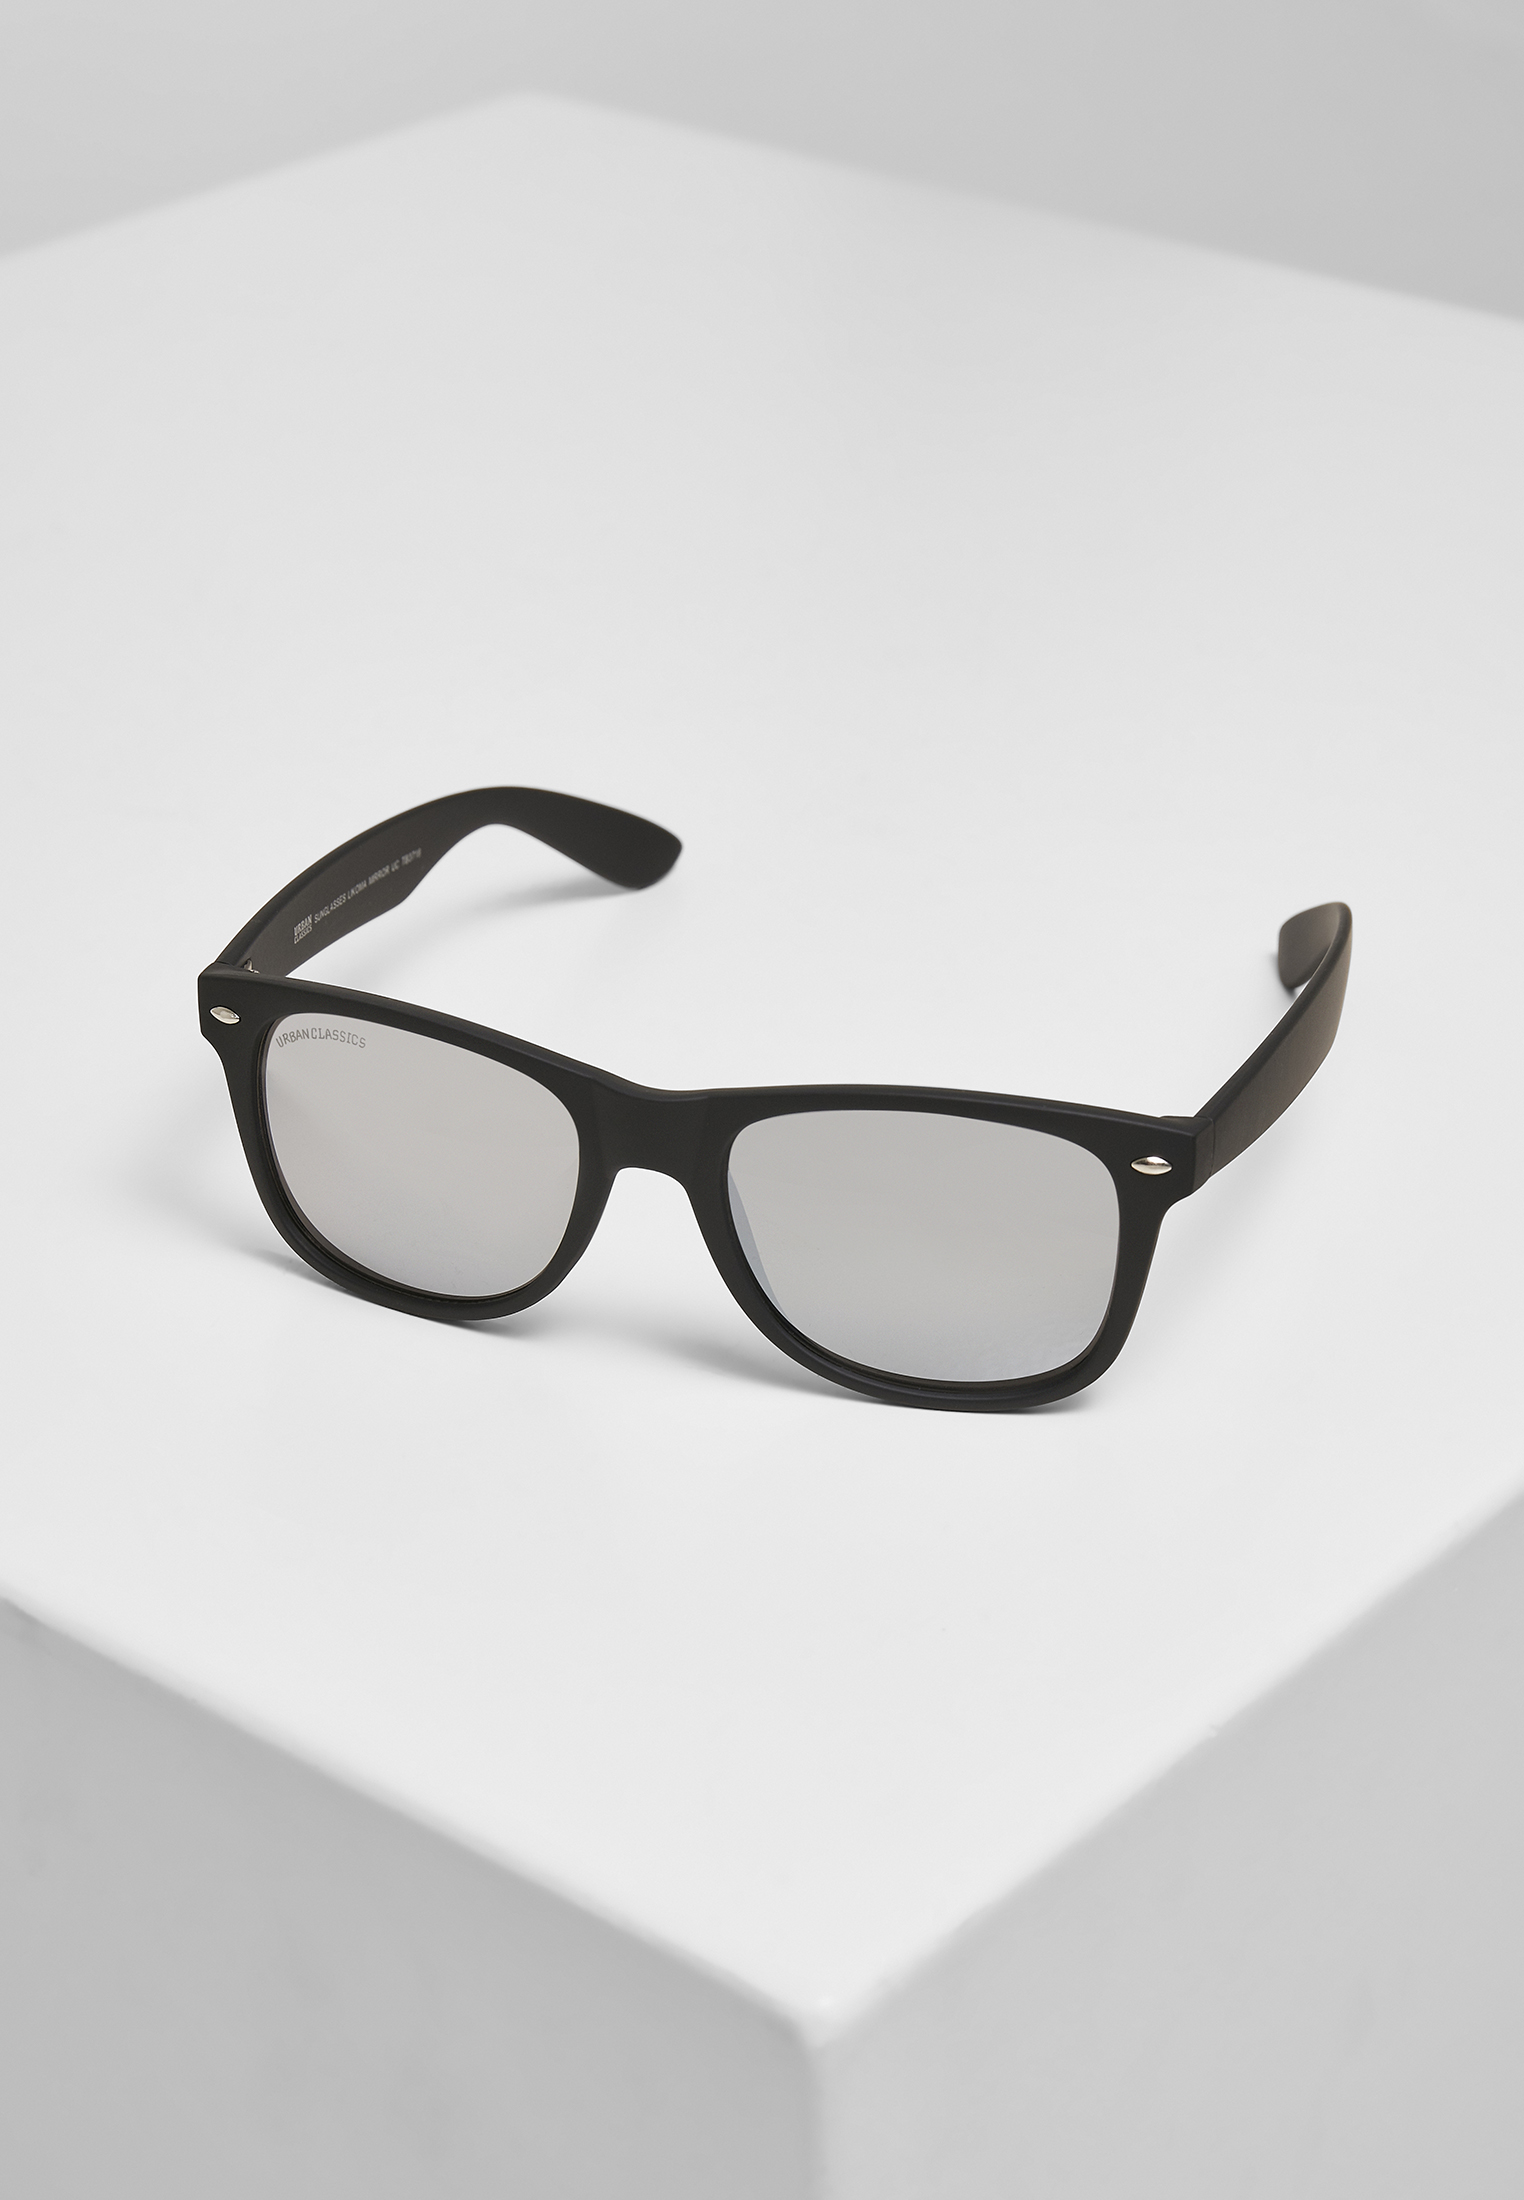 Sonnenbrillen Sunglasses Likoma Mirror UC in Farbe black/silver